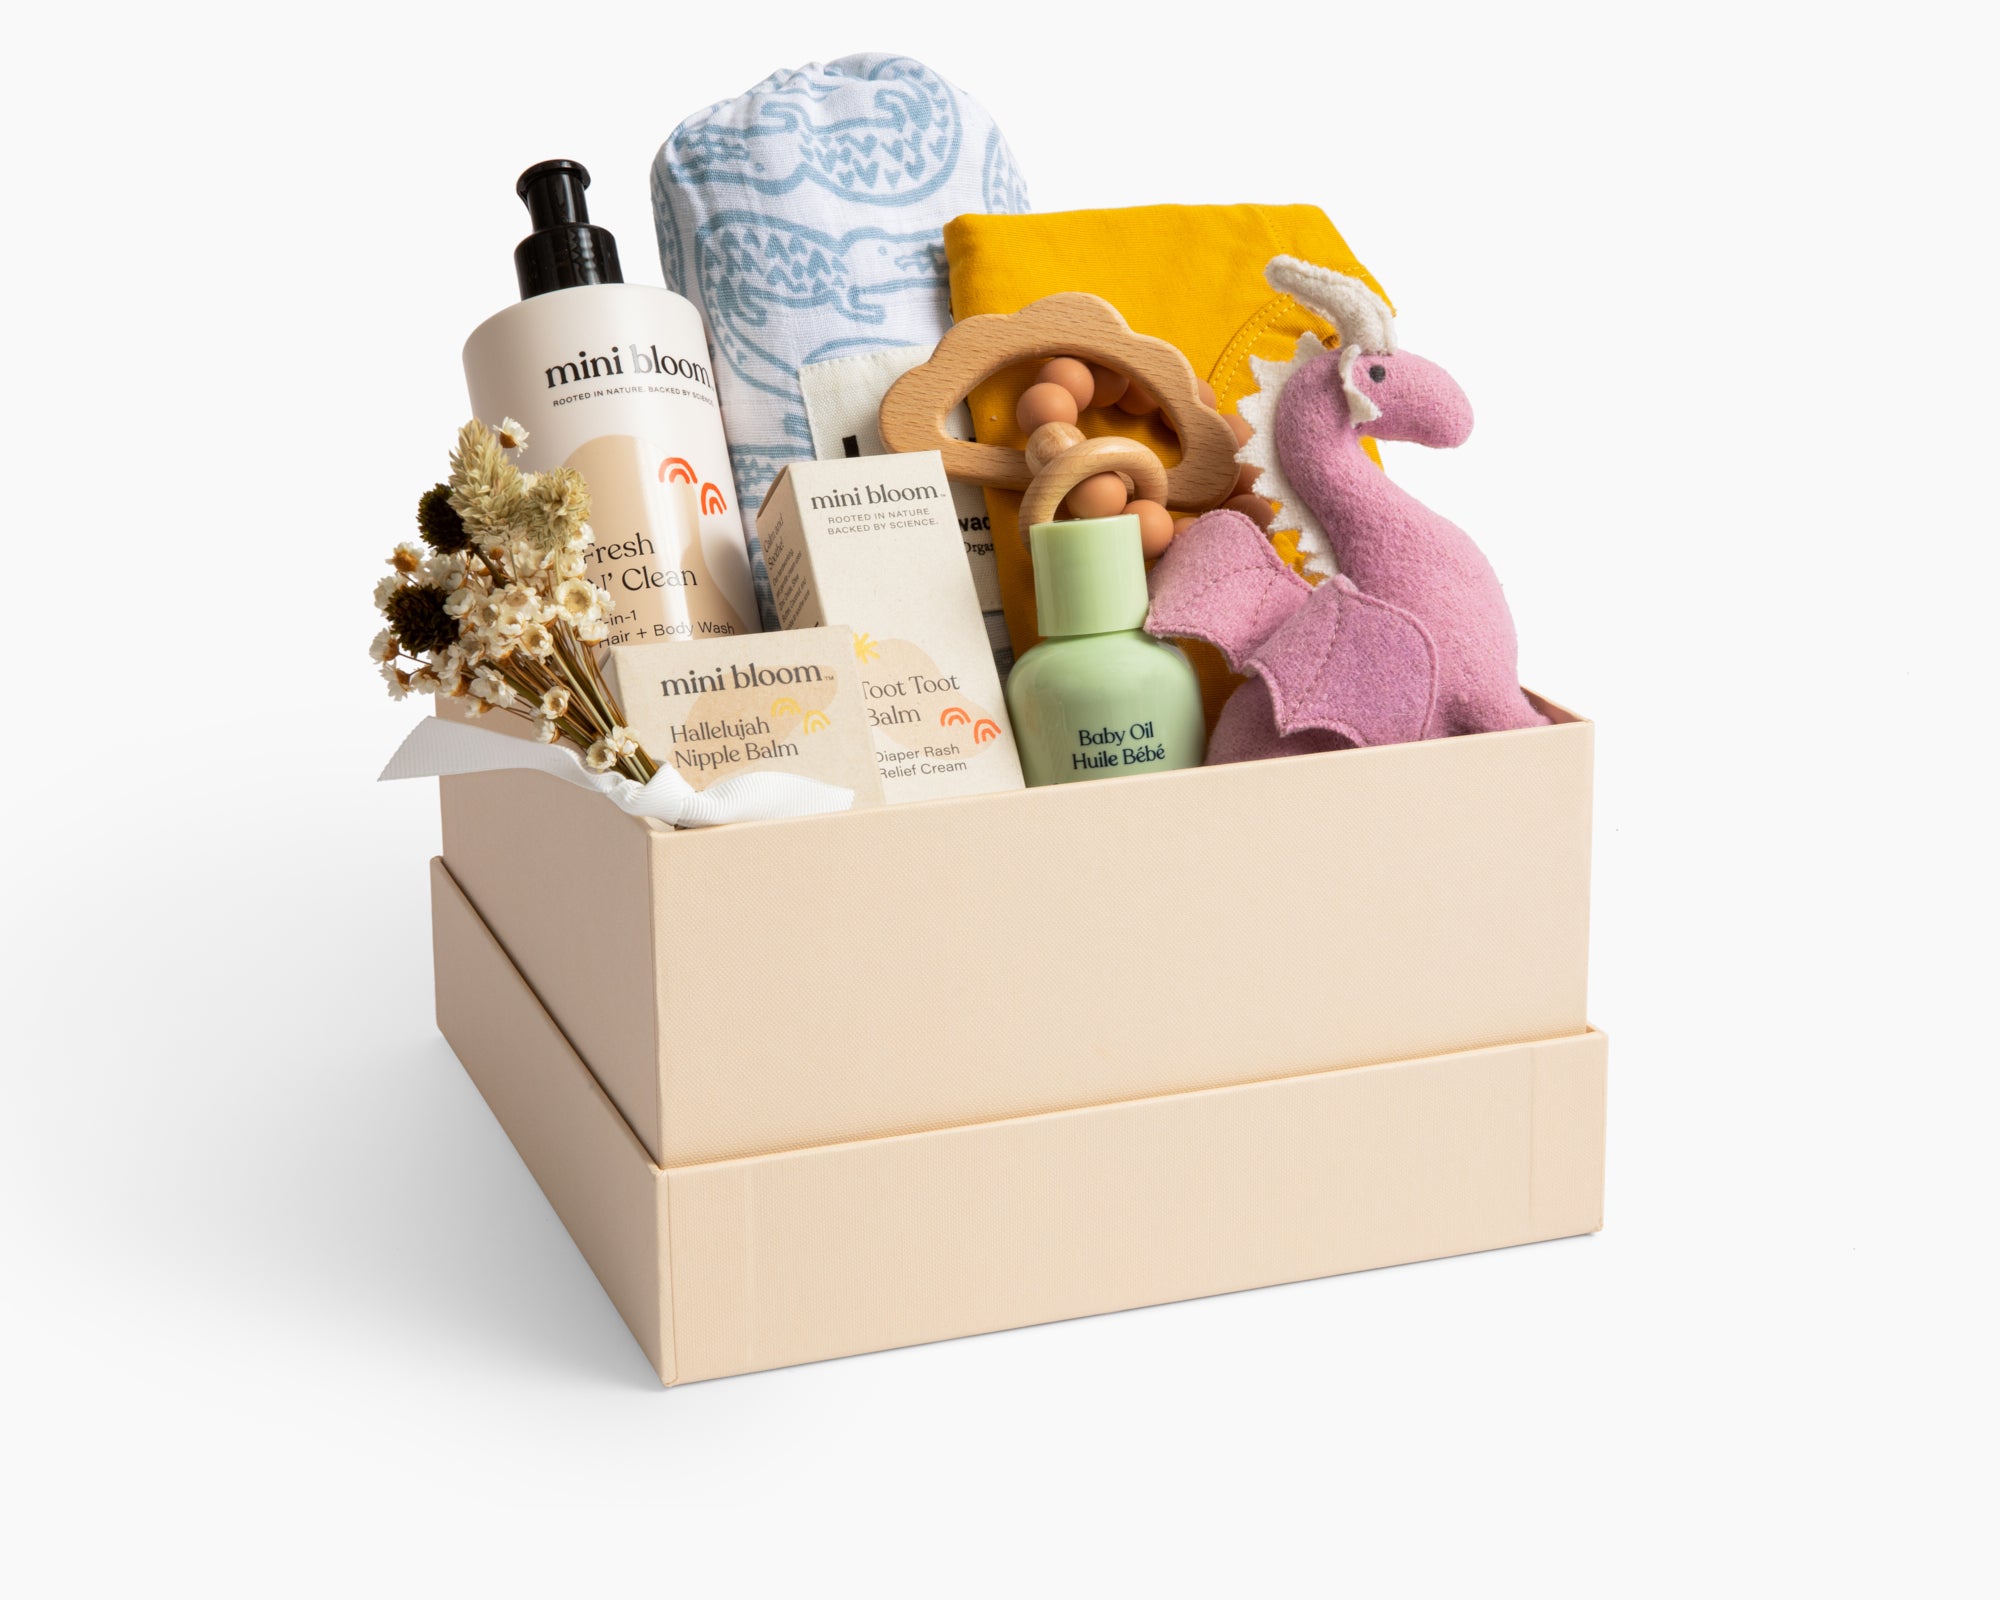 Grand Baby Gift Box